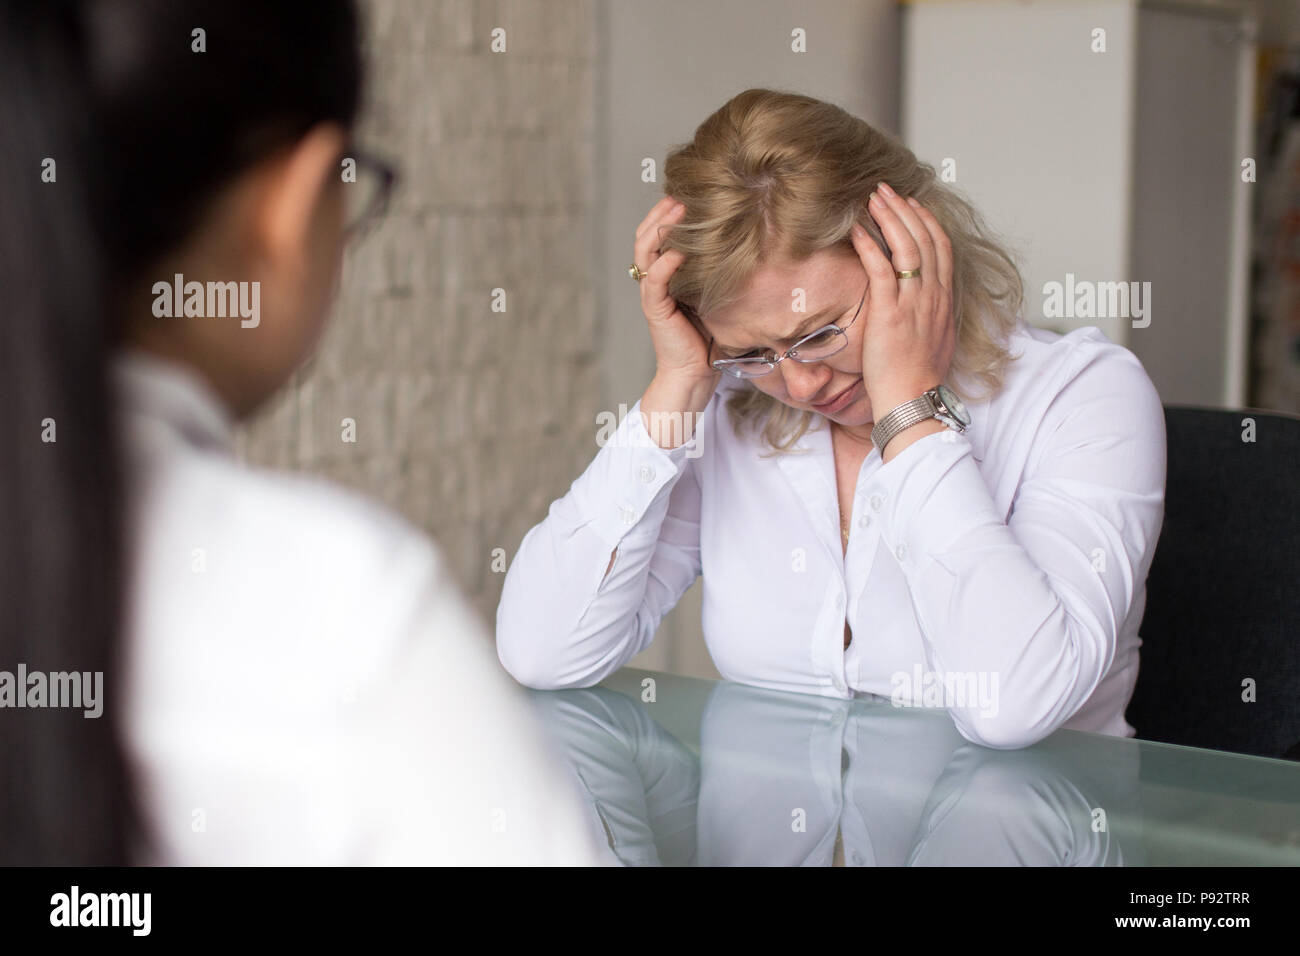 Kandidat weinen und Ausfall auf Job Interview im Büro Stockfoto